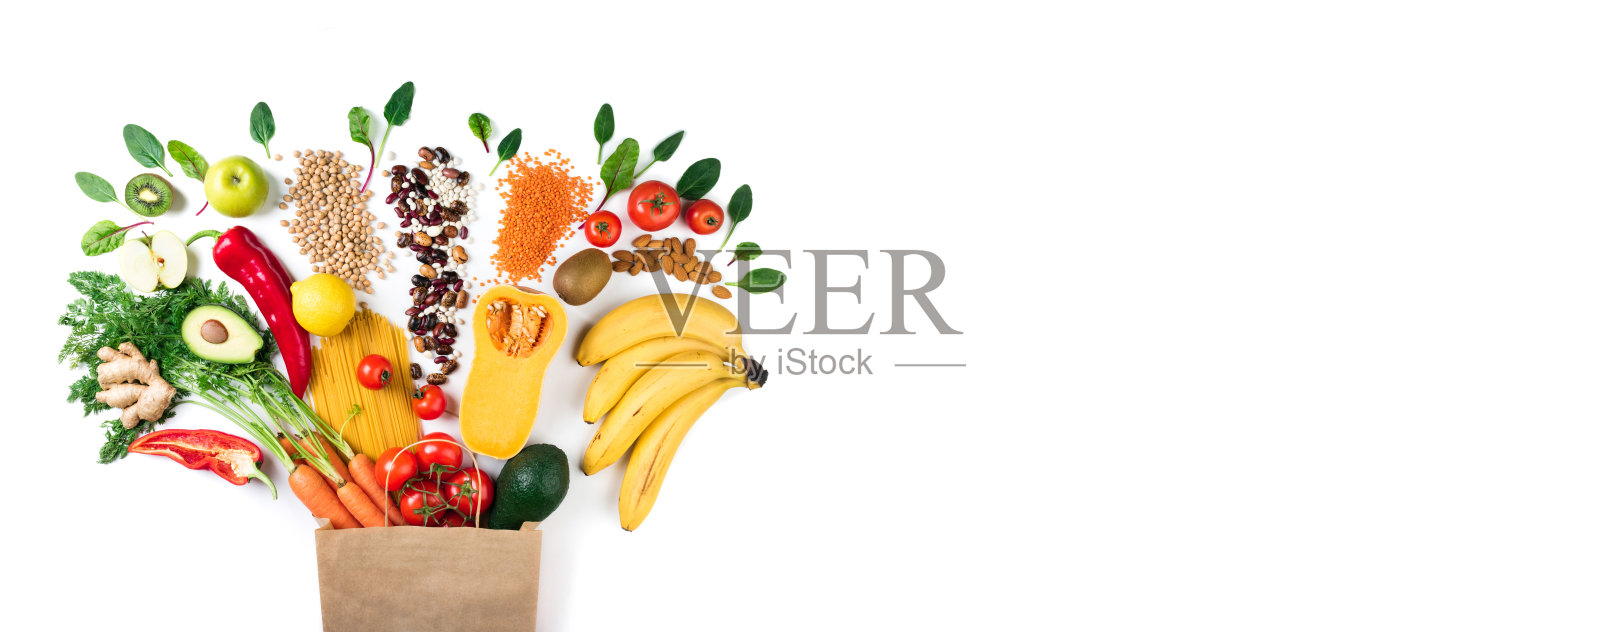 健康食品的背景。健康素食食品纸袋意大利面，蔬菜和水果上白色。购物食品的概念。带有拷贝空间的长格式照片摄影图片